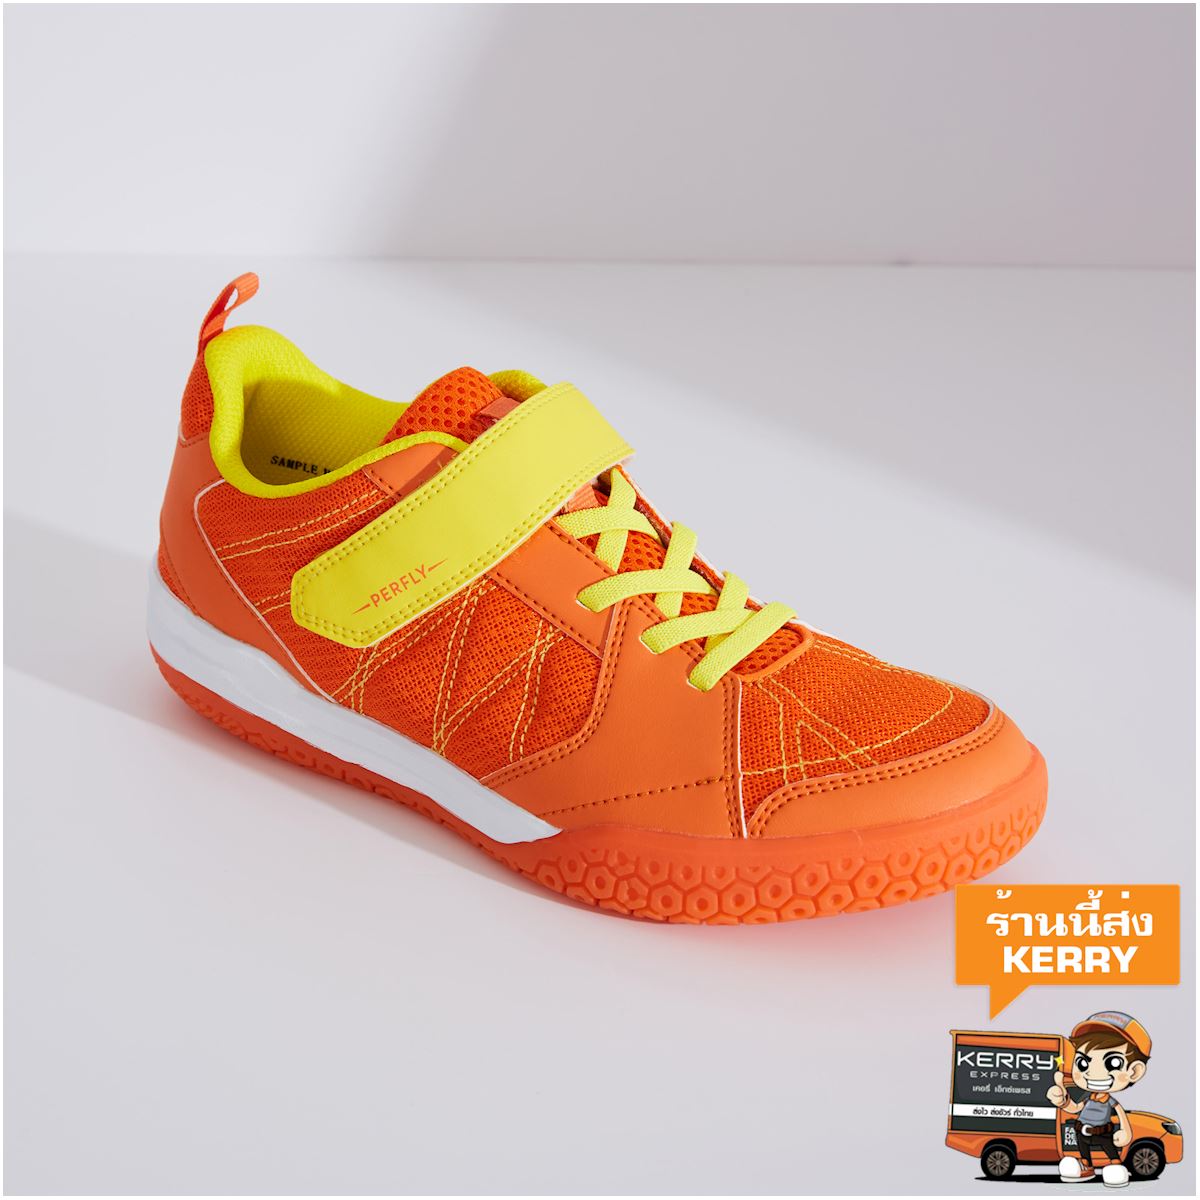 รองเท้าแบดมินตันสำหรับเด็กรุ่น BS 160 (สีส้ม) เด็กผู้ชาย 4 ถึง 16 ปี แบดมินตัน สควอช รองเท้ากีฬา รองเท้า รองเท้าผ้าใบ